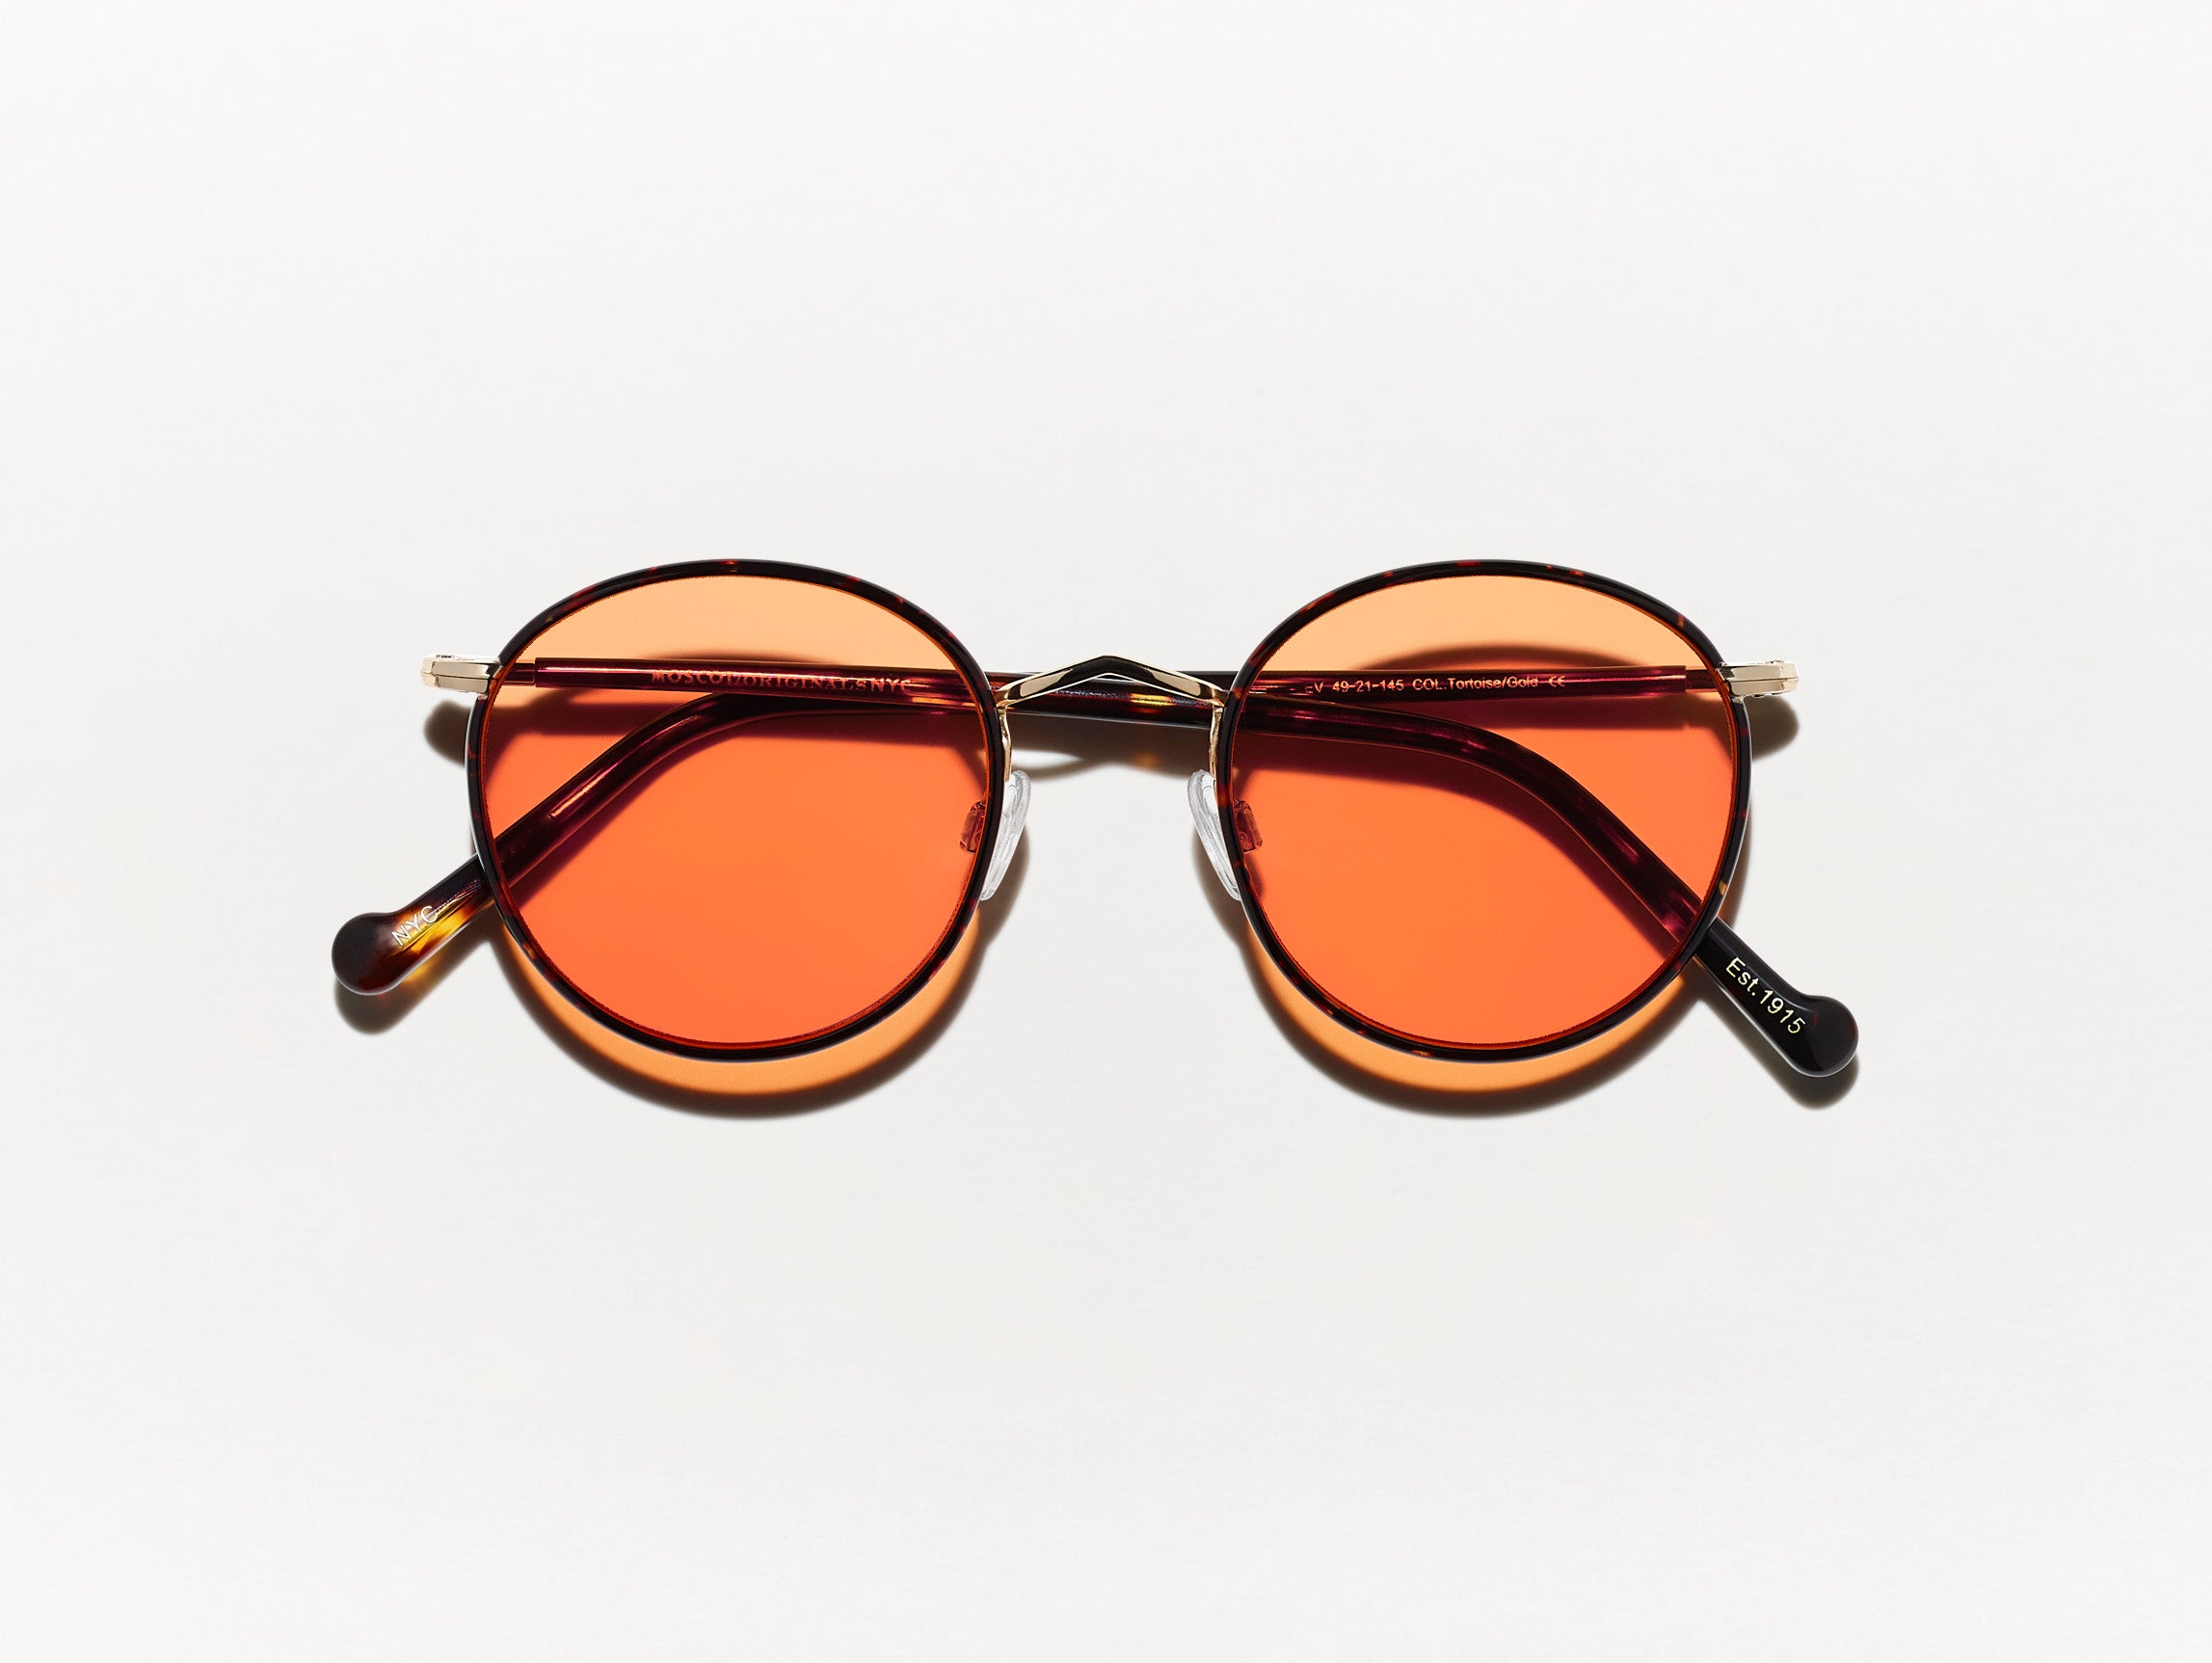 #color_woodstock orange | The ZEV in Tortoise in Woodstock Orange Tinted Lenses